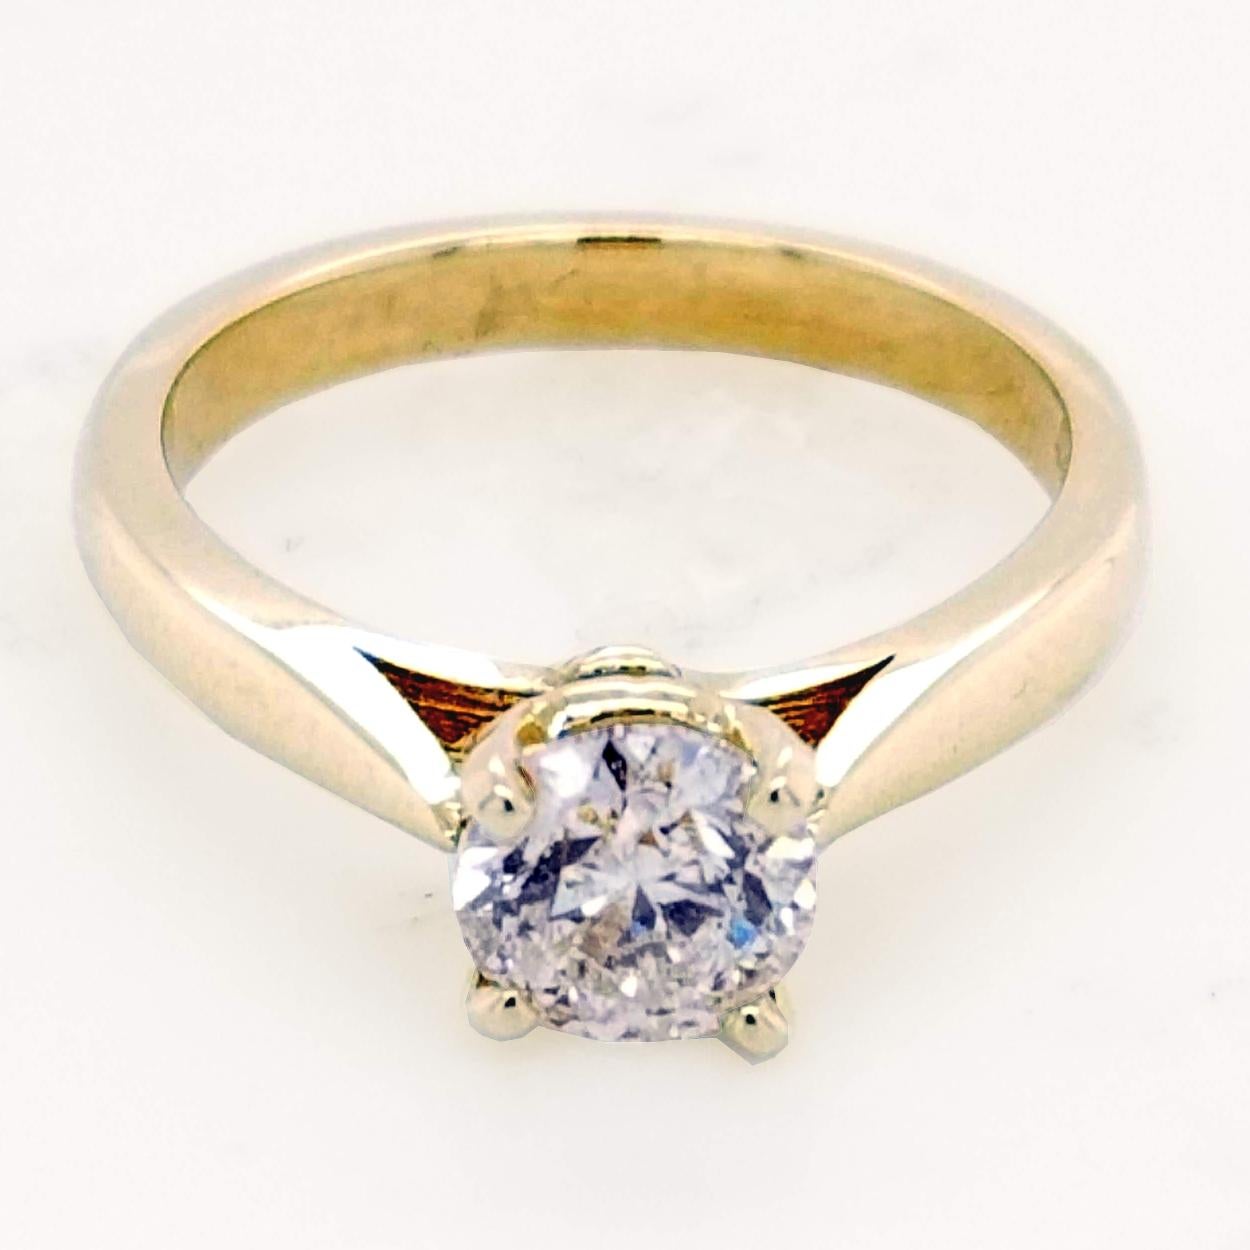 Ein sehr schöner 0,97 Karat runder Brillant G-H/SI3 EGL US zertifiziert Zentrum Diamant in einem 14K Gelbgold Solitär Verlobungsring gesetzt. 

Spezifikationen des Diamanten:
Mittelstein: 0,97 Karat EGL US-zertifizierter runder Brillant G-H/SI3